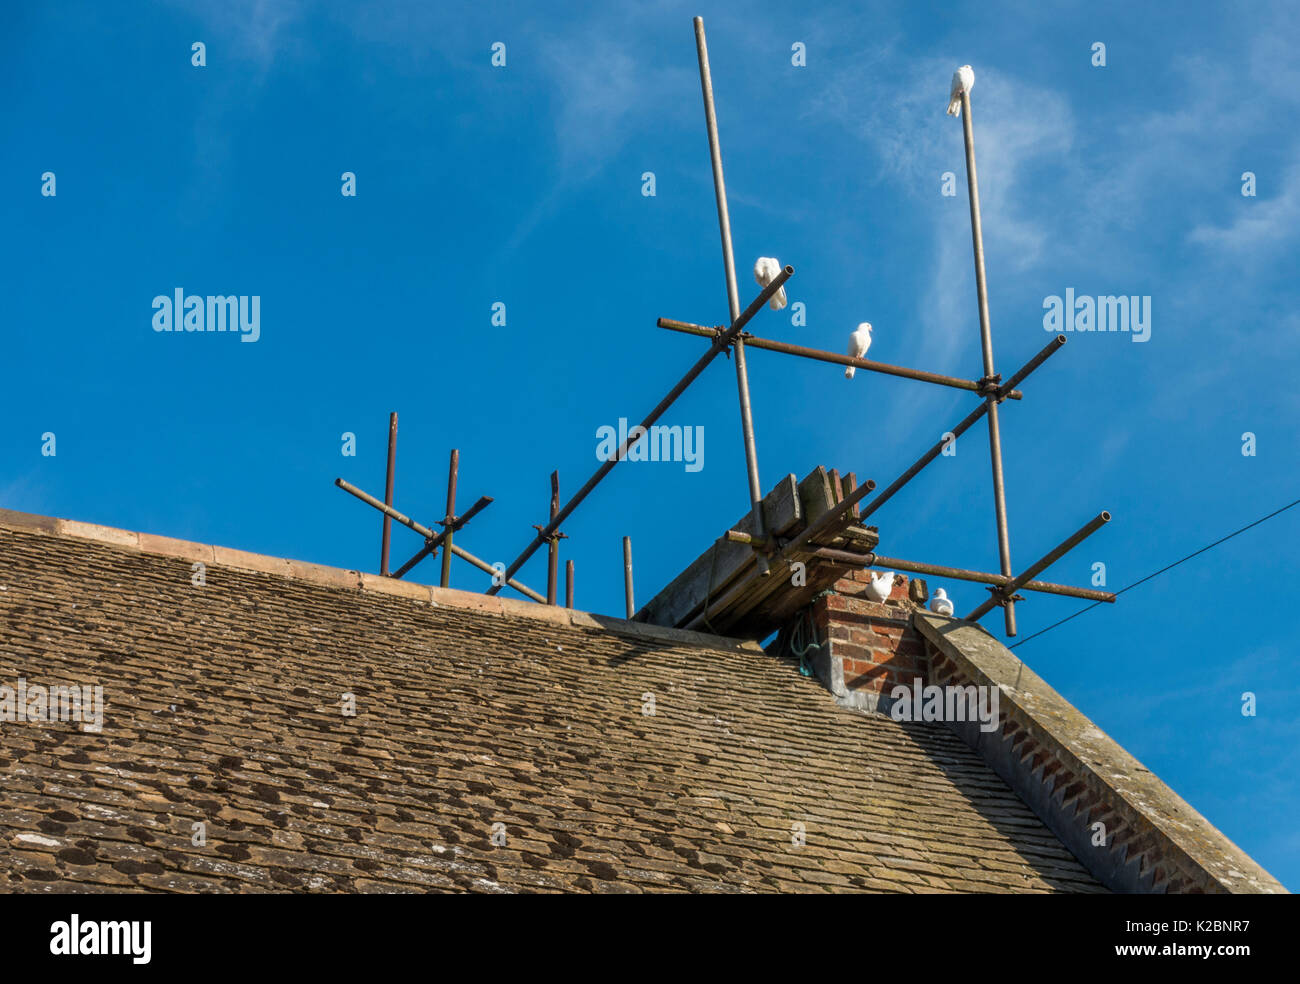 Piccioni bianco appollaiata sul tetto della casa ponteggio, contro un cielo blu chiaro su un luminoso giorno. Langtoft, Lincolnshire, Inghilterra, Regno Unito. Foto Stock